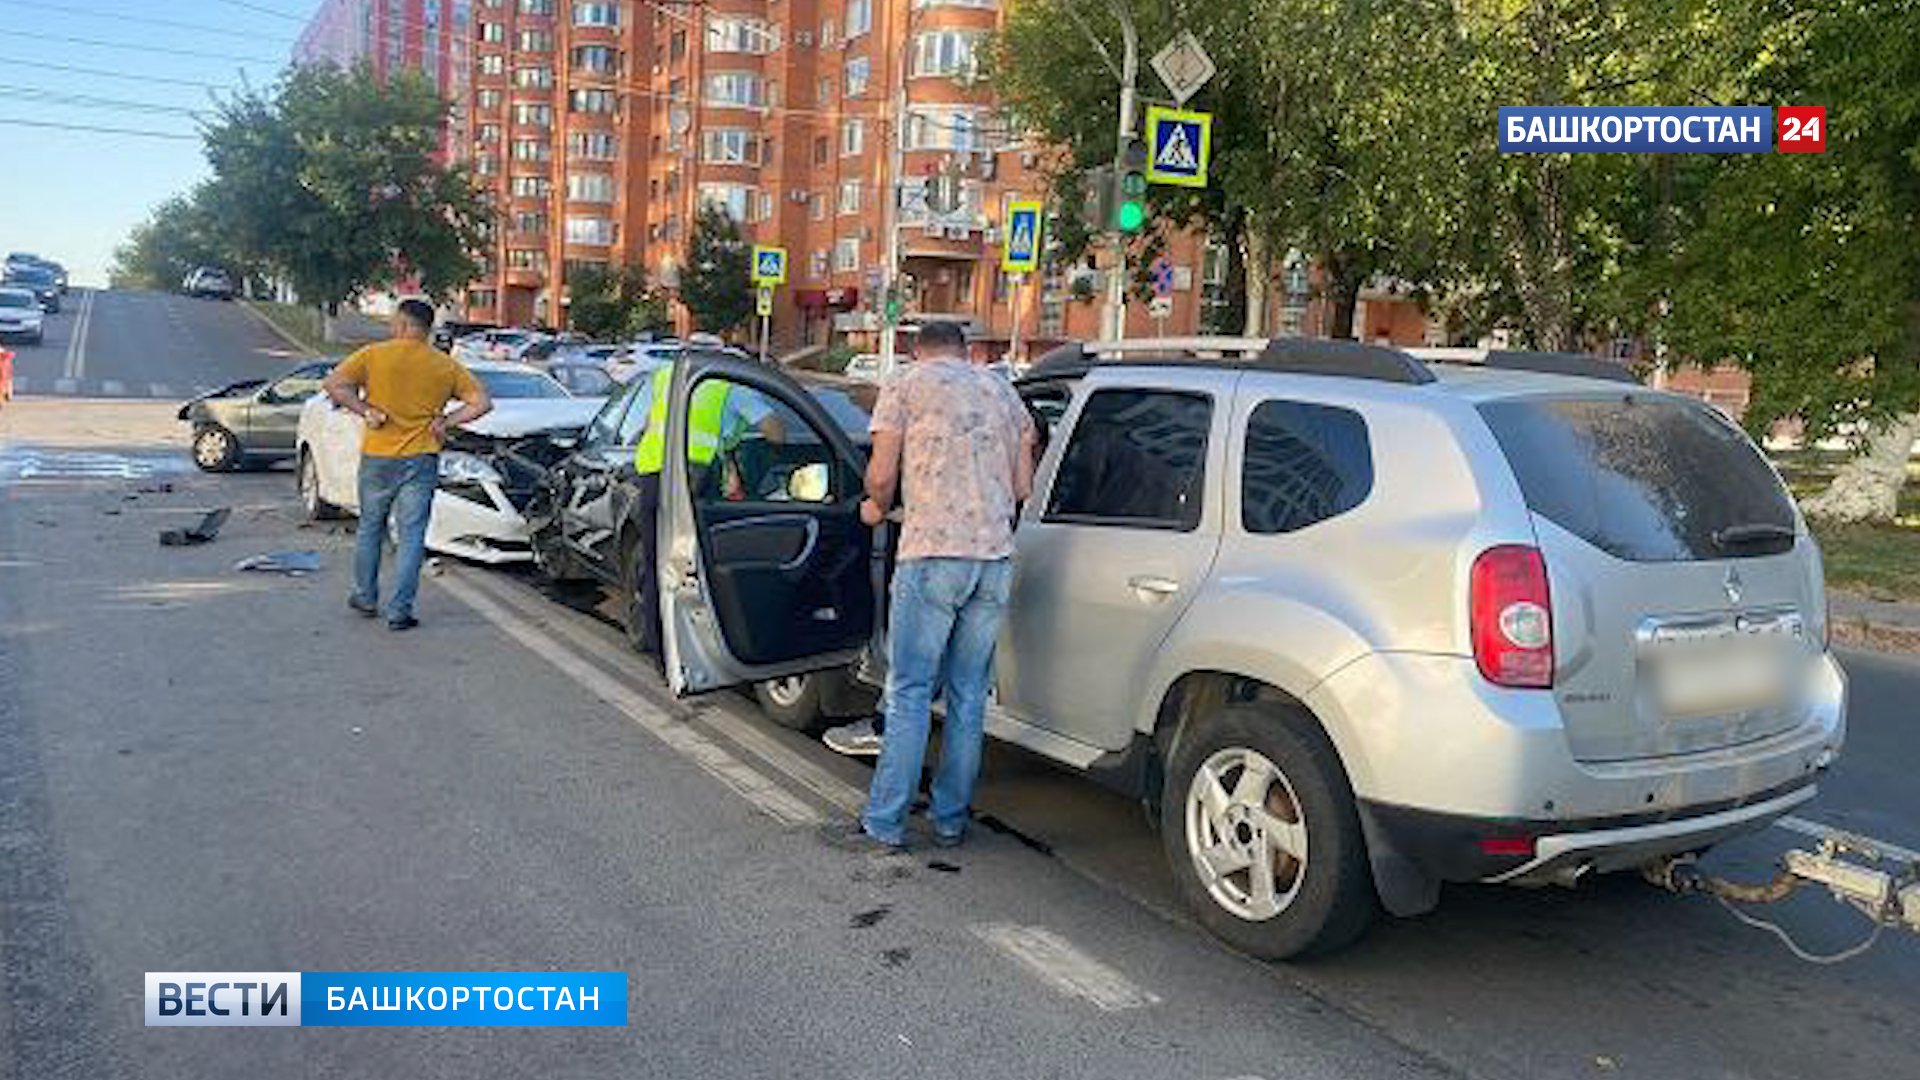 Новости уфы сегодня самые свежие происшествия. Авария на Тверской улице. Человек возле машины.